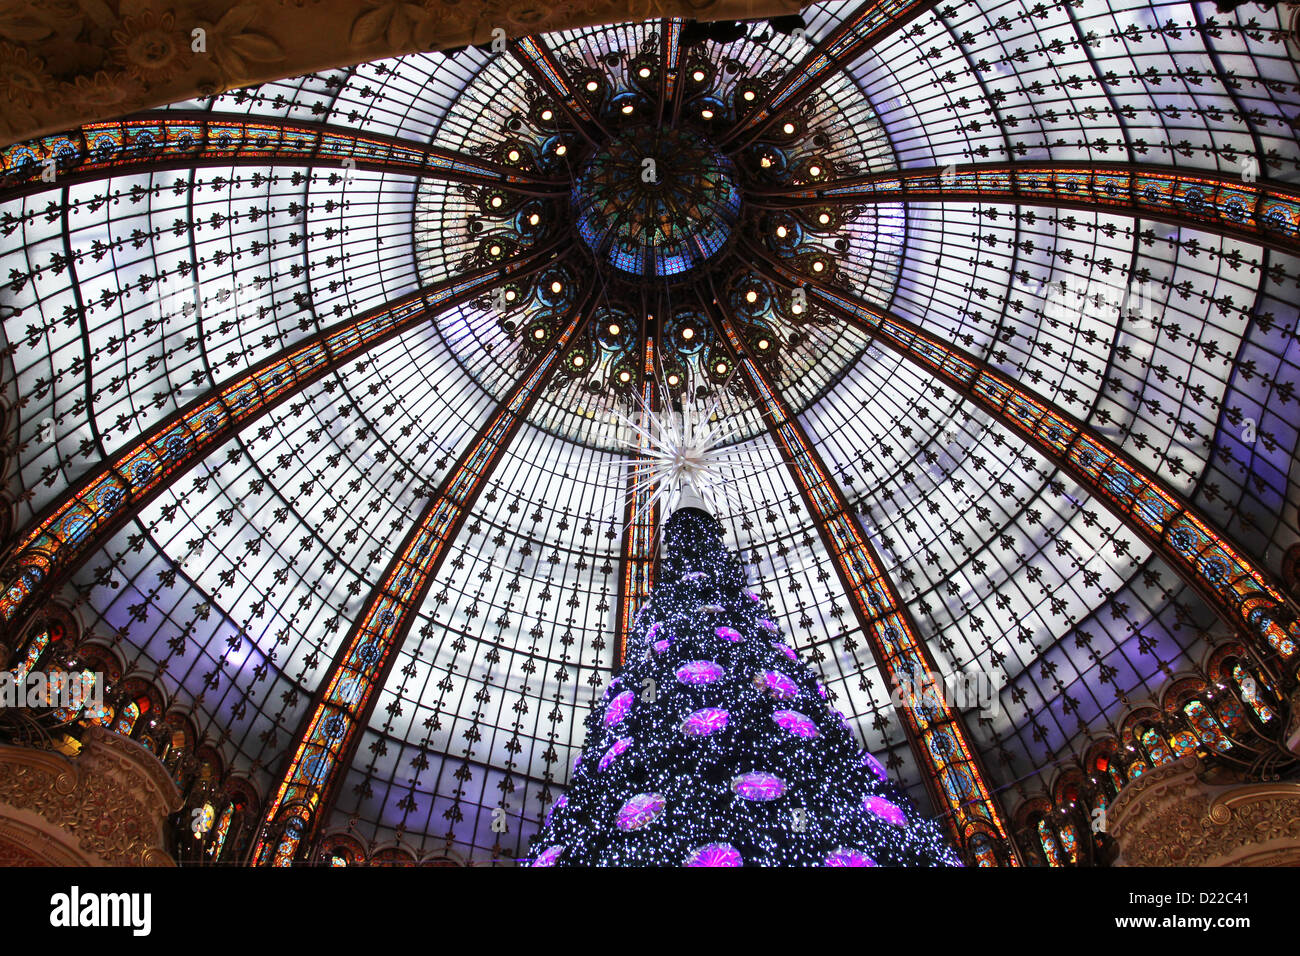 L'arbre de Noël dans des Galeries Lafayette, des pavillons avec parfum, le 08 novembre 2012, Paris, France. Banque D'Images